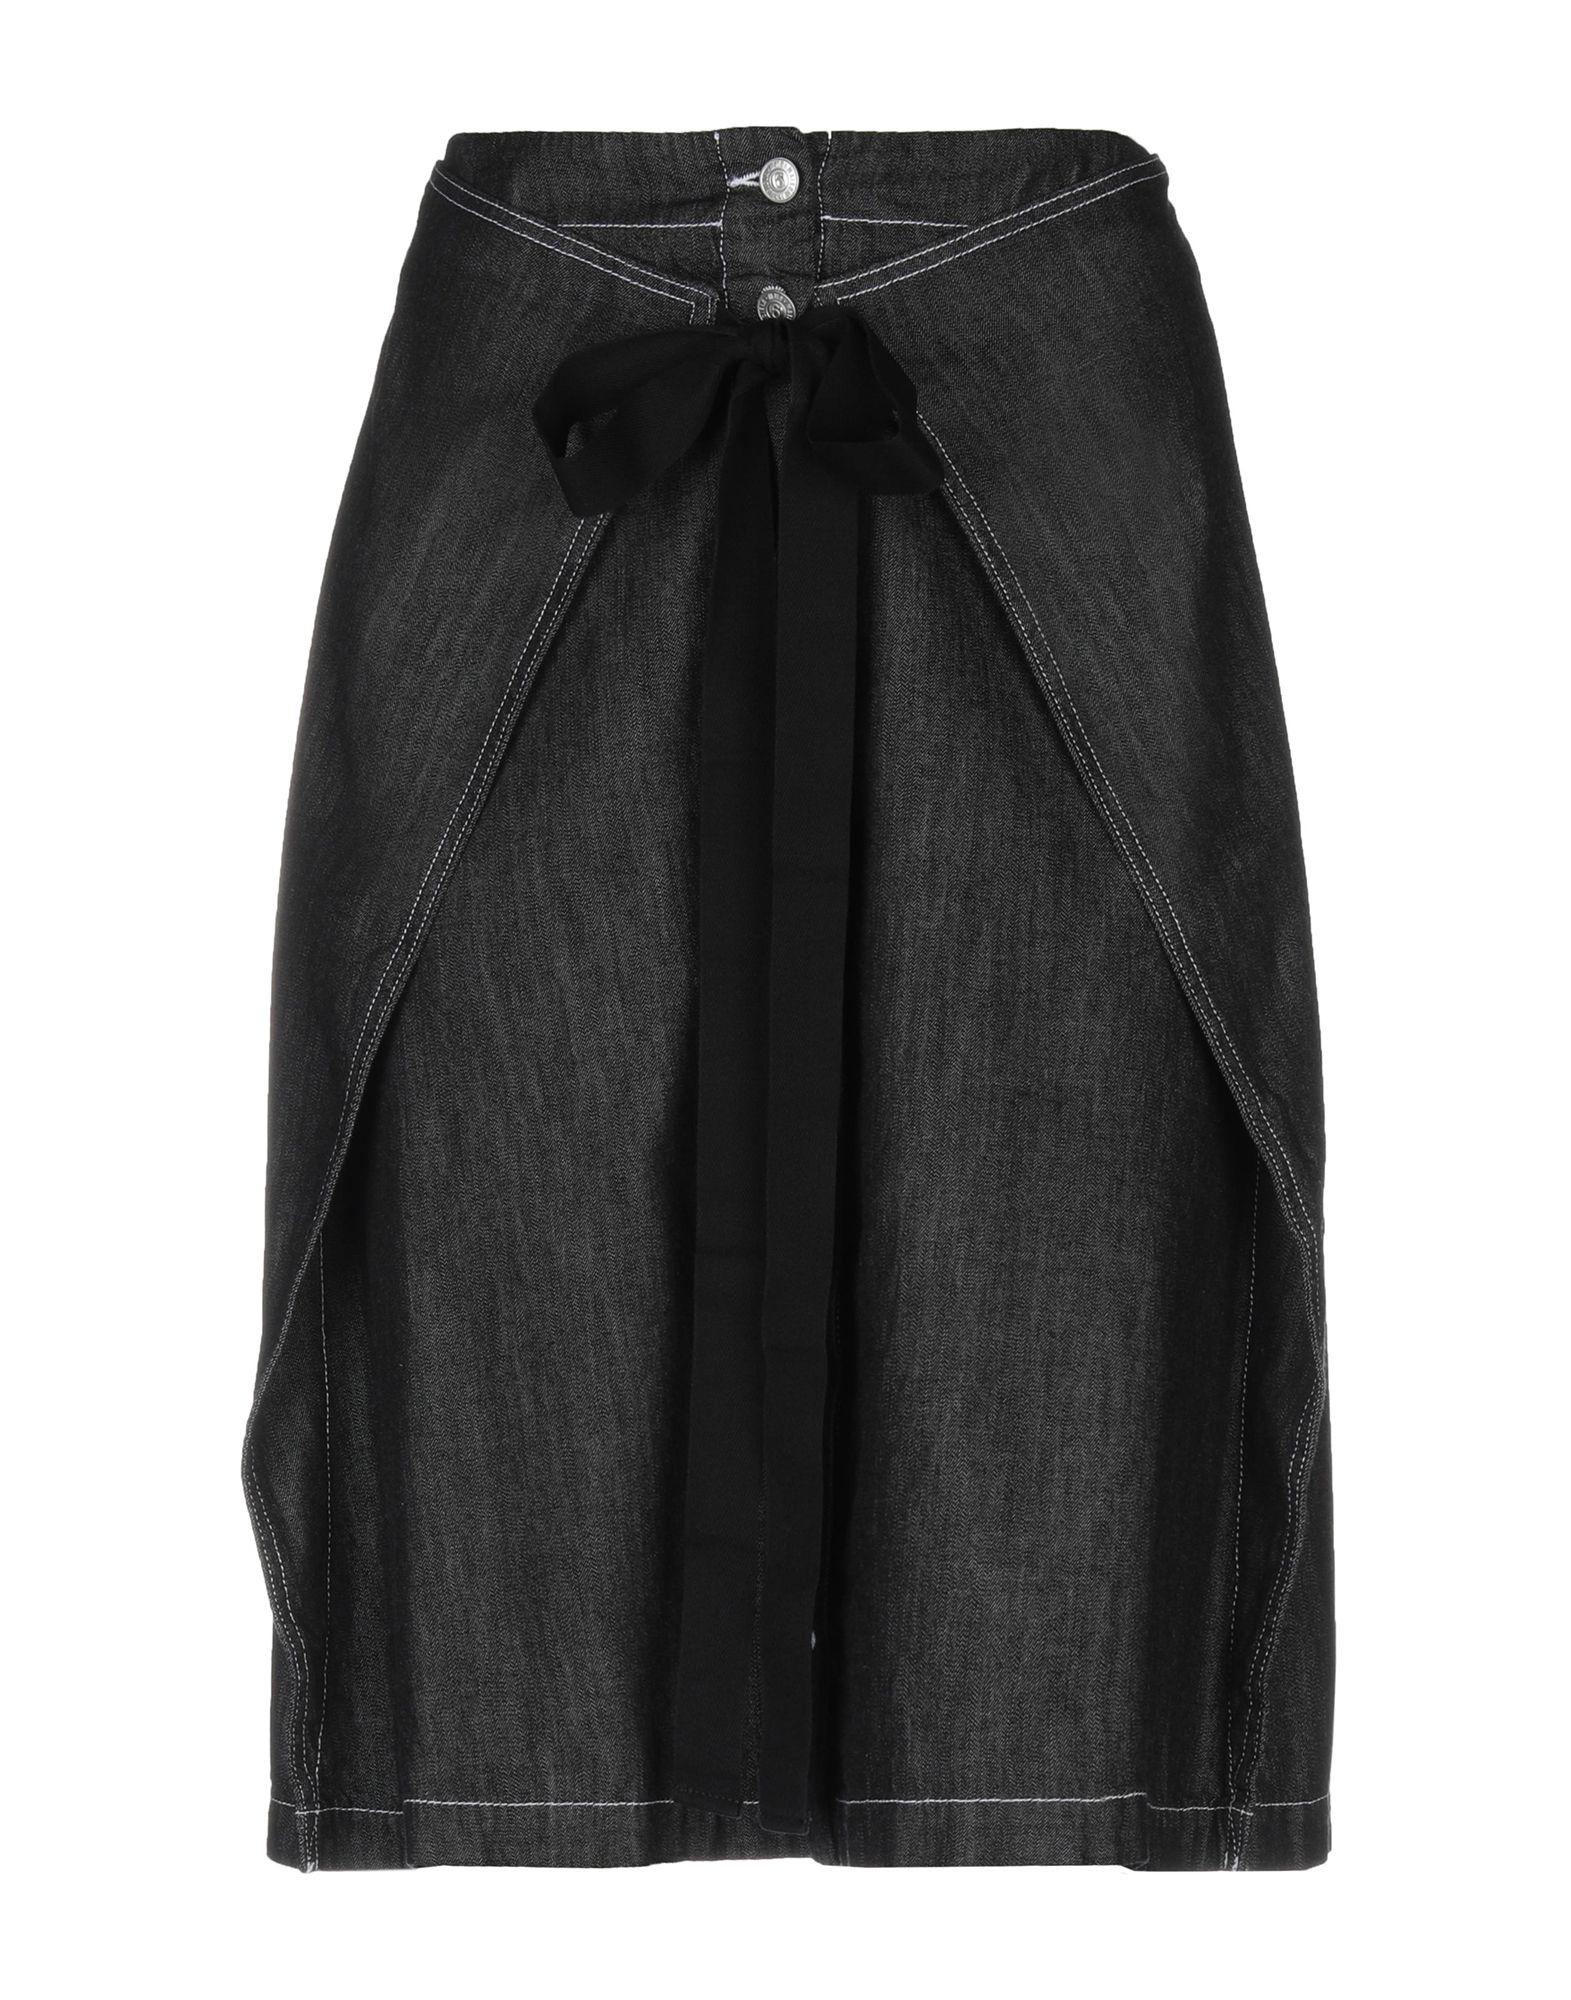 MM6 by Maison Martin Margiela Denim Skirt in Black - Lyst